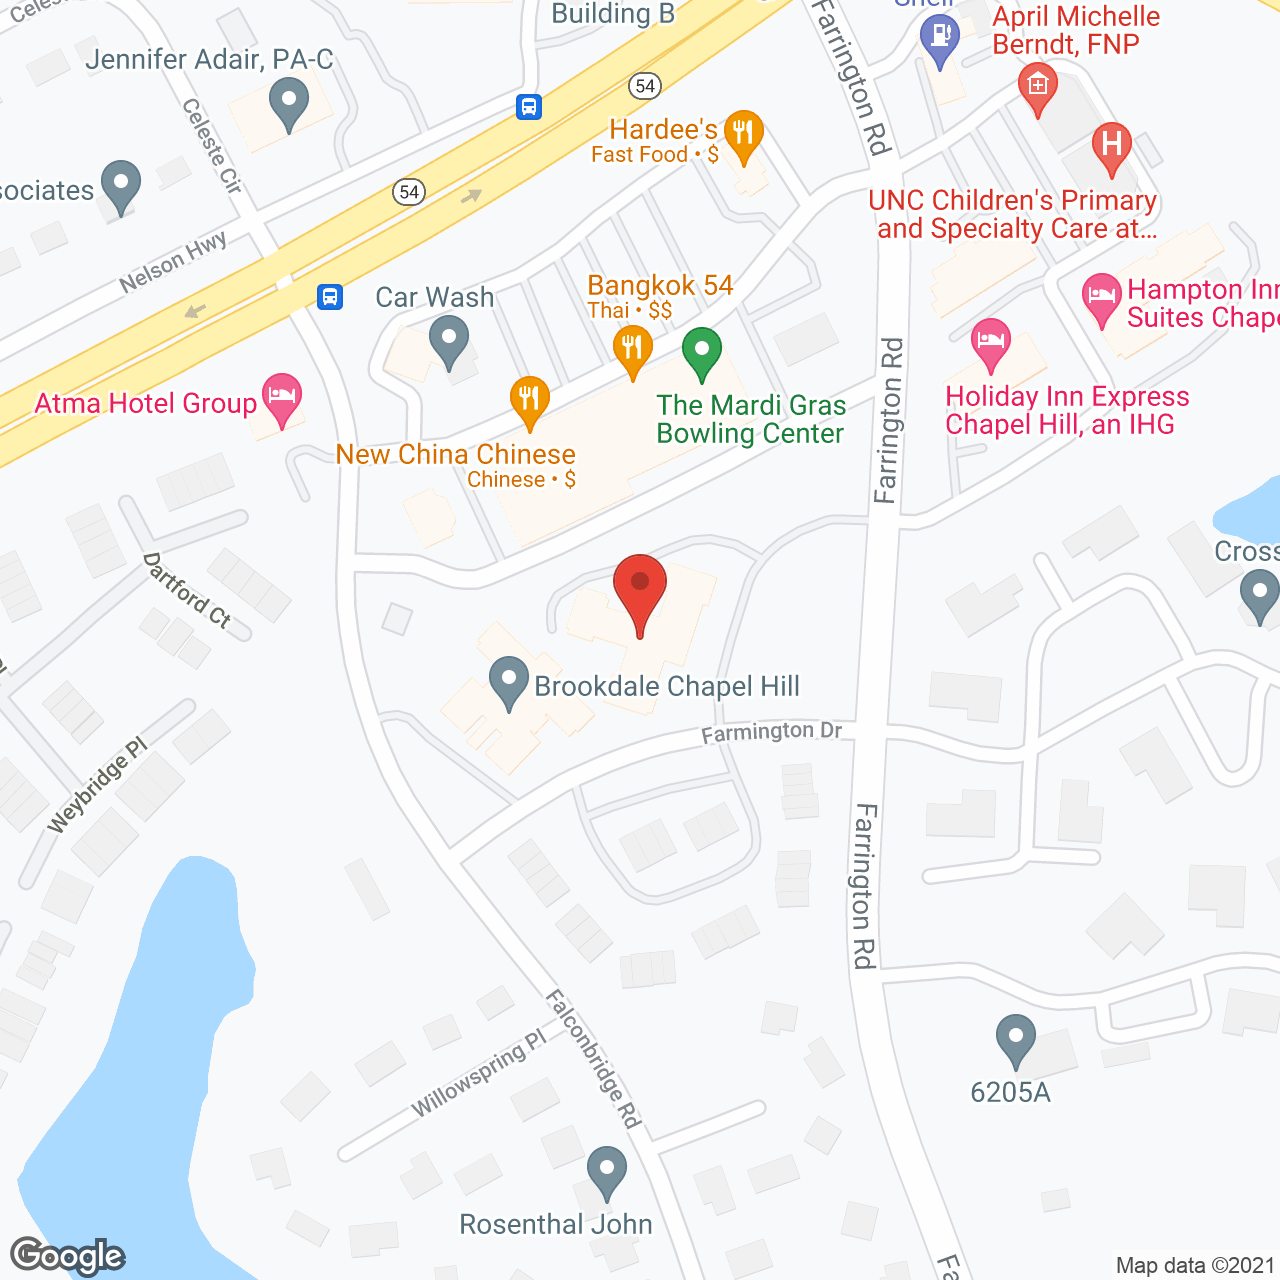 Brookdale Chapel Hill in google map